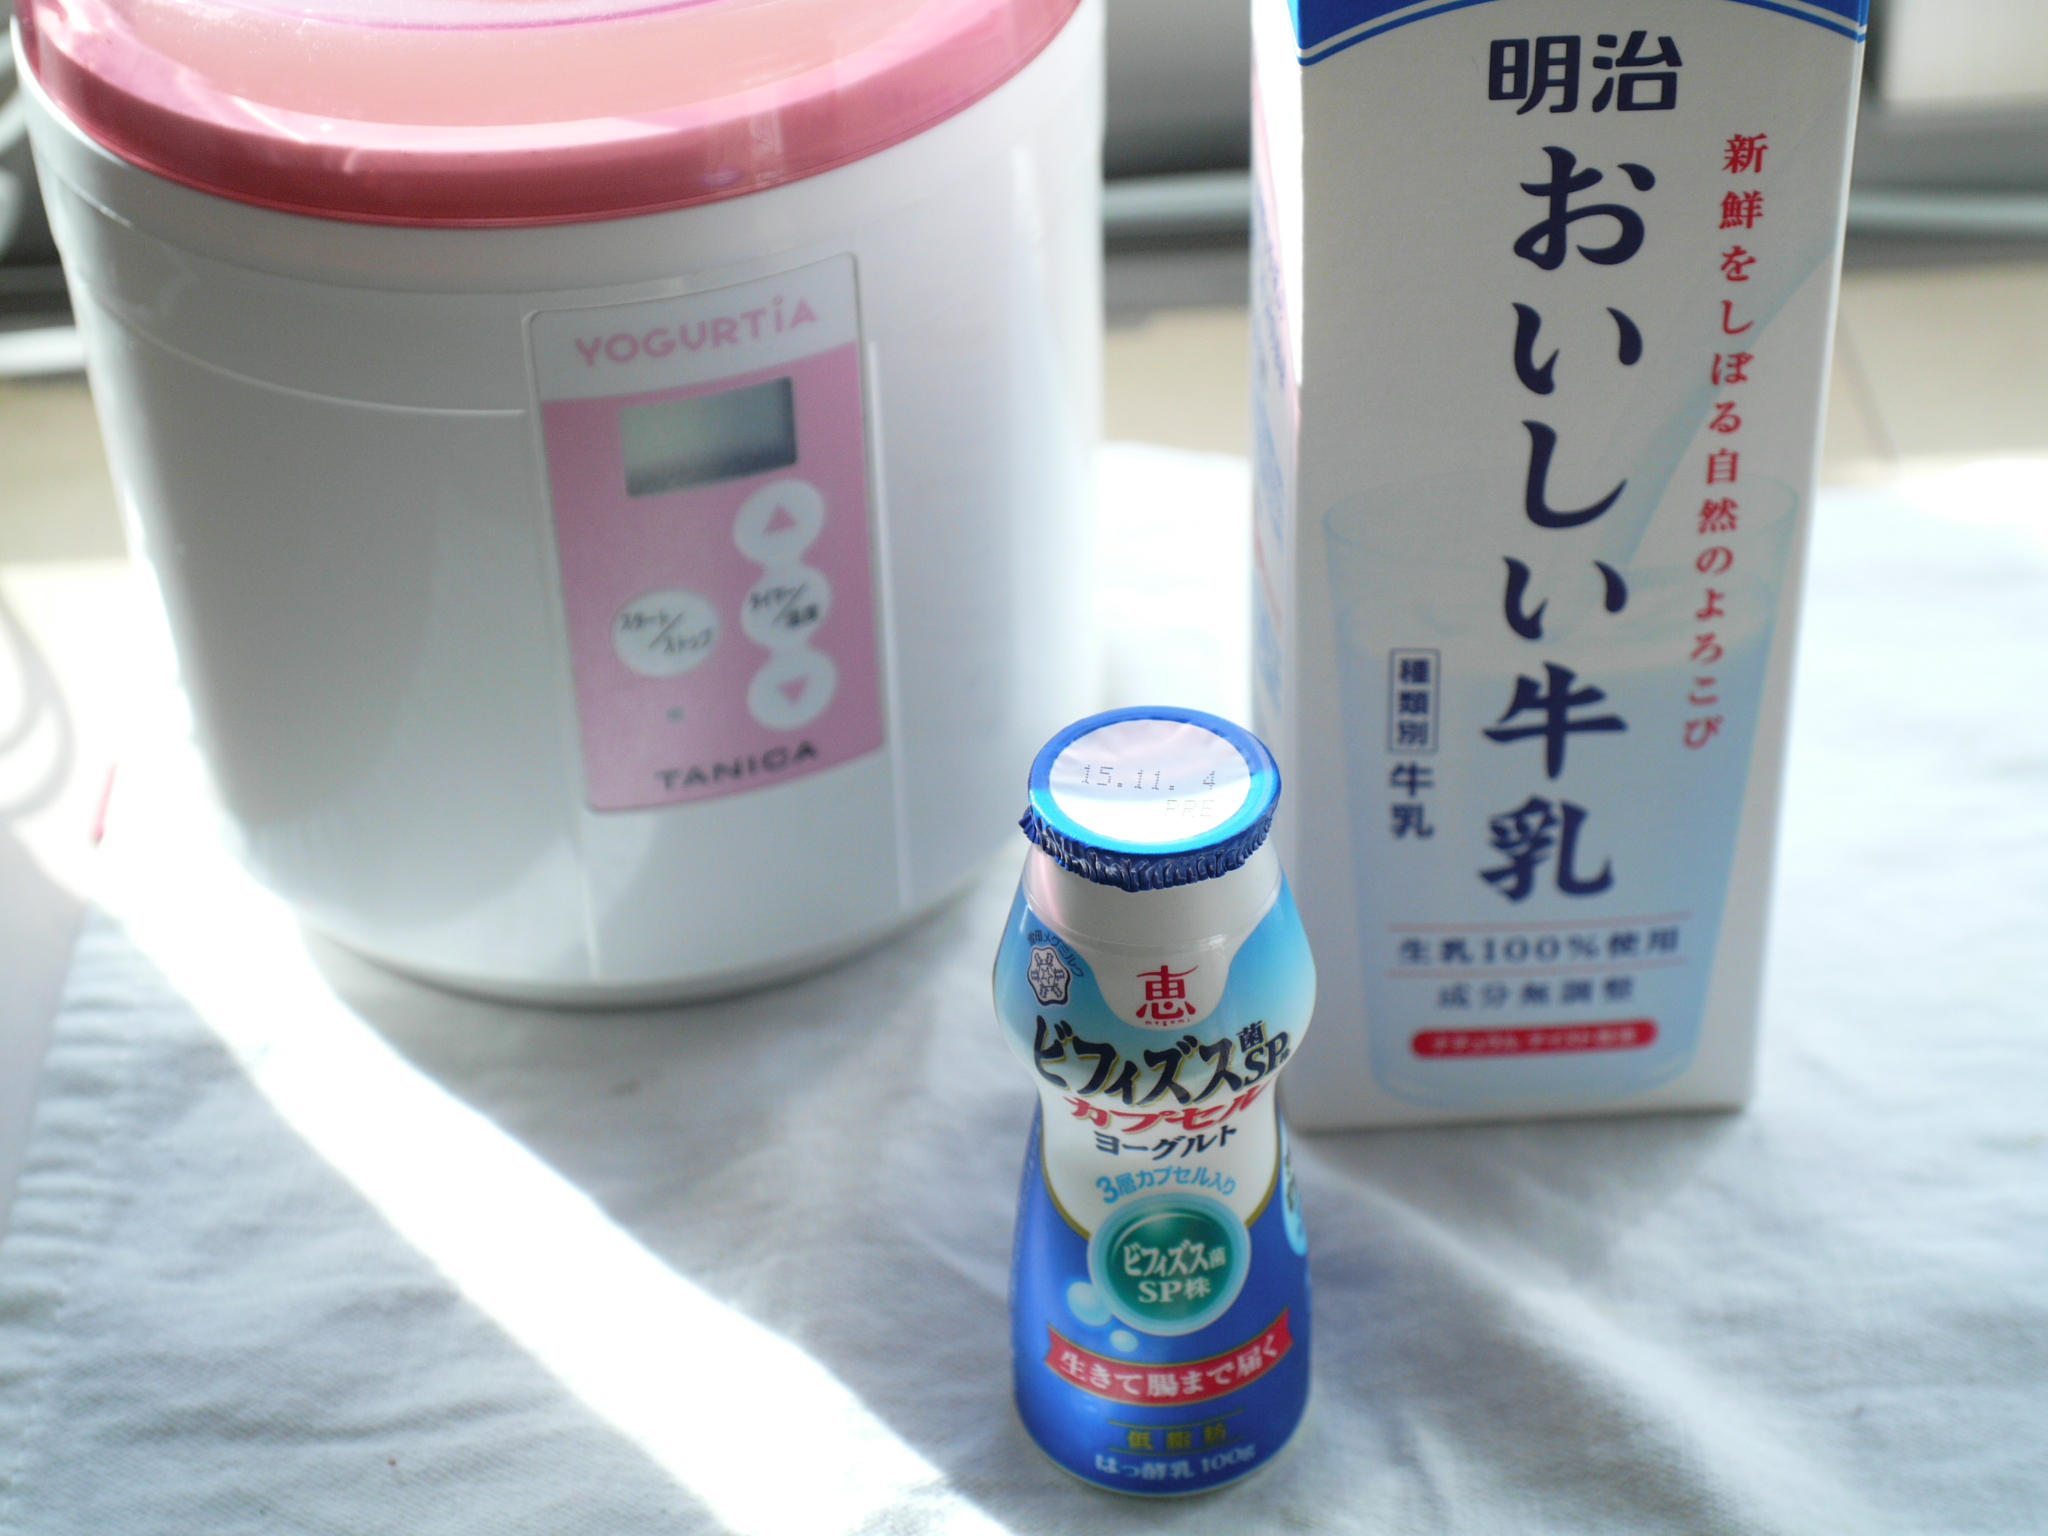 実験 ヨーグルト ビフィズス菌sp株 おいしい牛乳編 タニカブログ